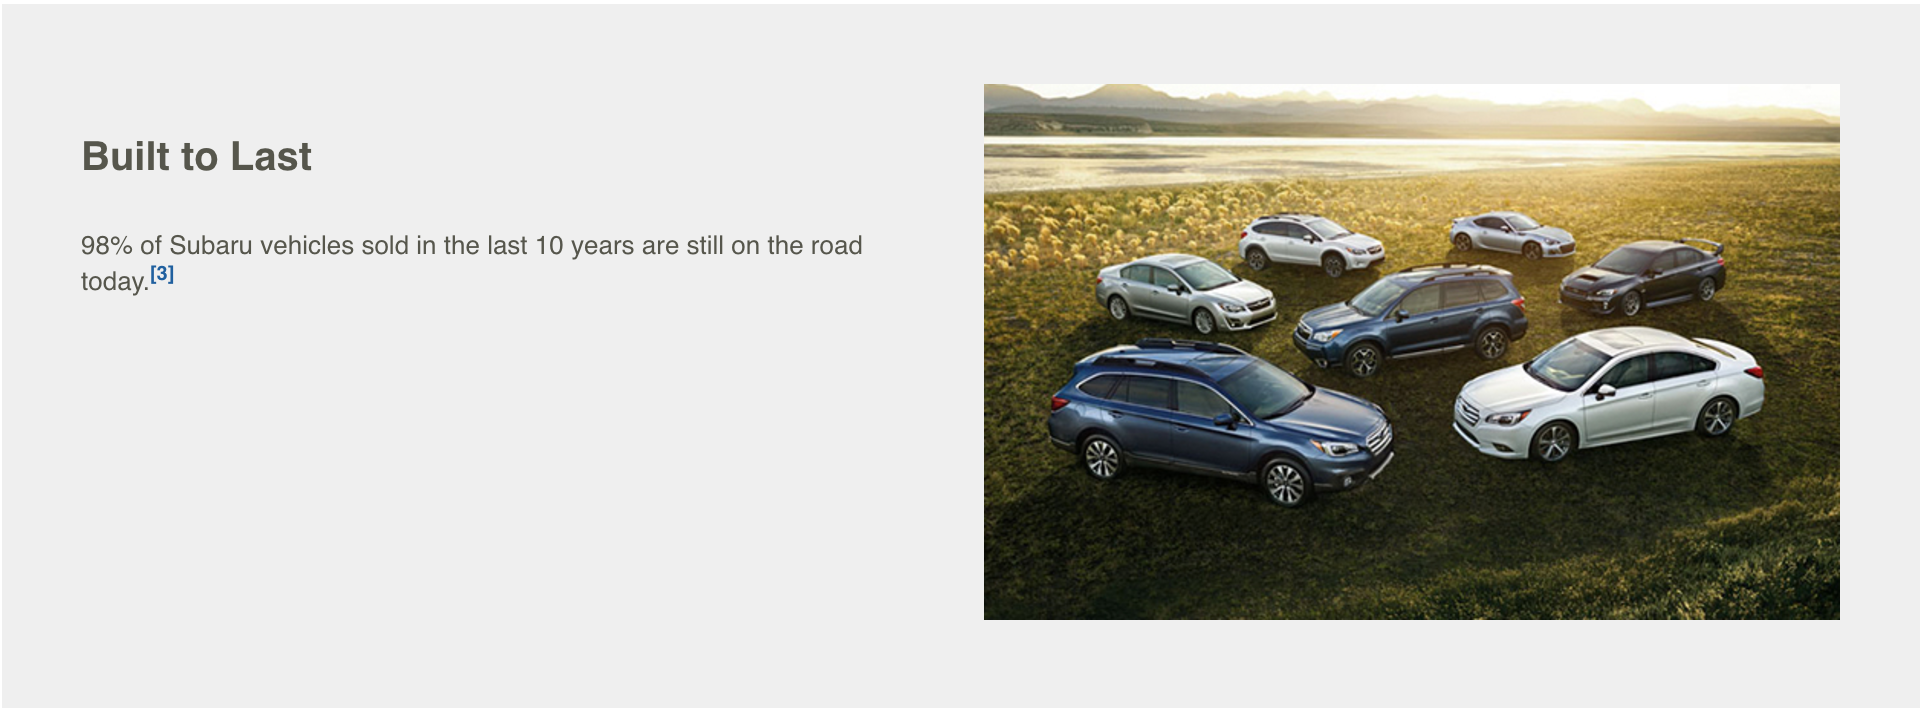 Built to last, Subaru's marketing claim